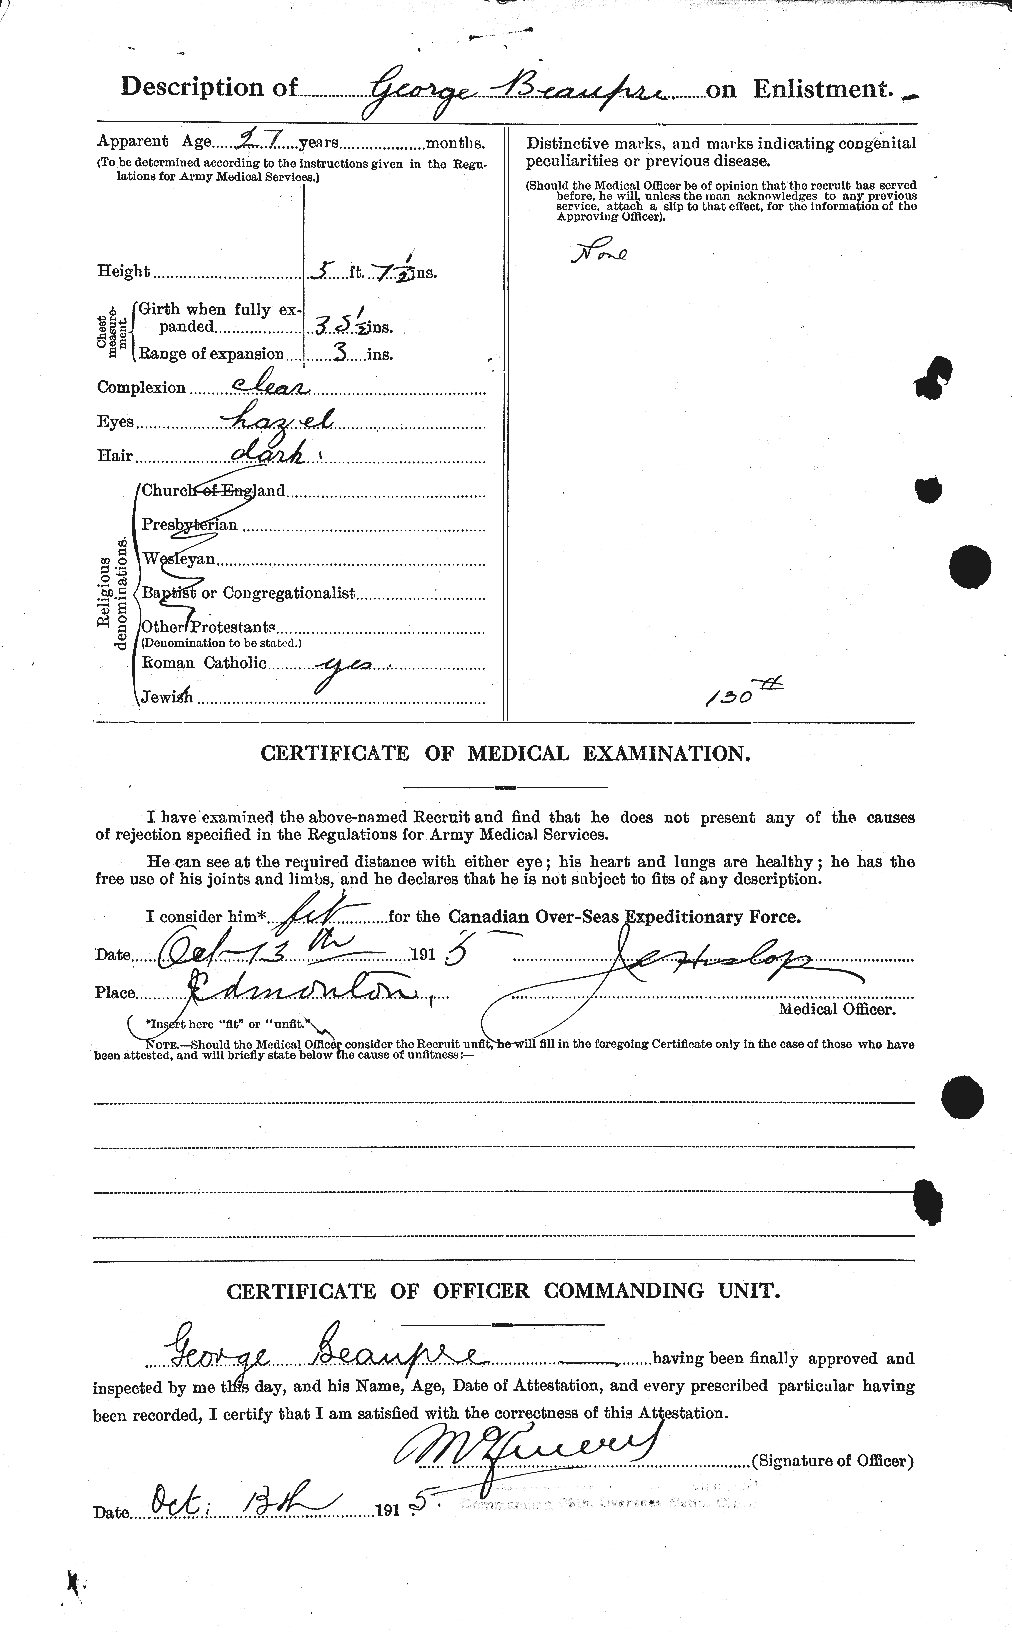 Dossiers du Personnel de la Première Guerre mondiale - CEC 231749b